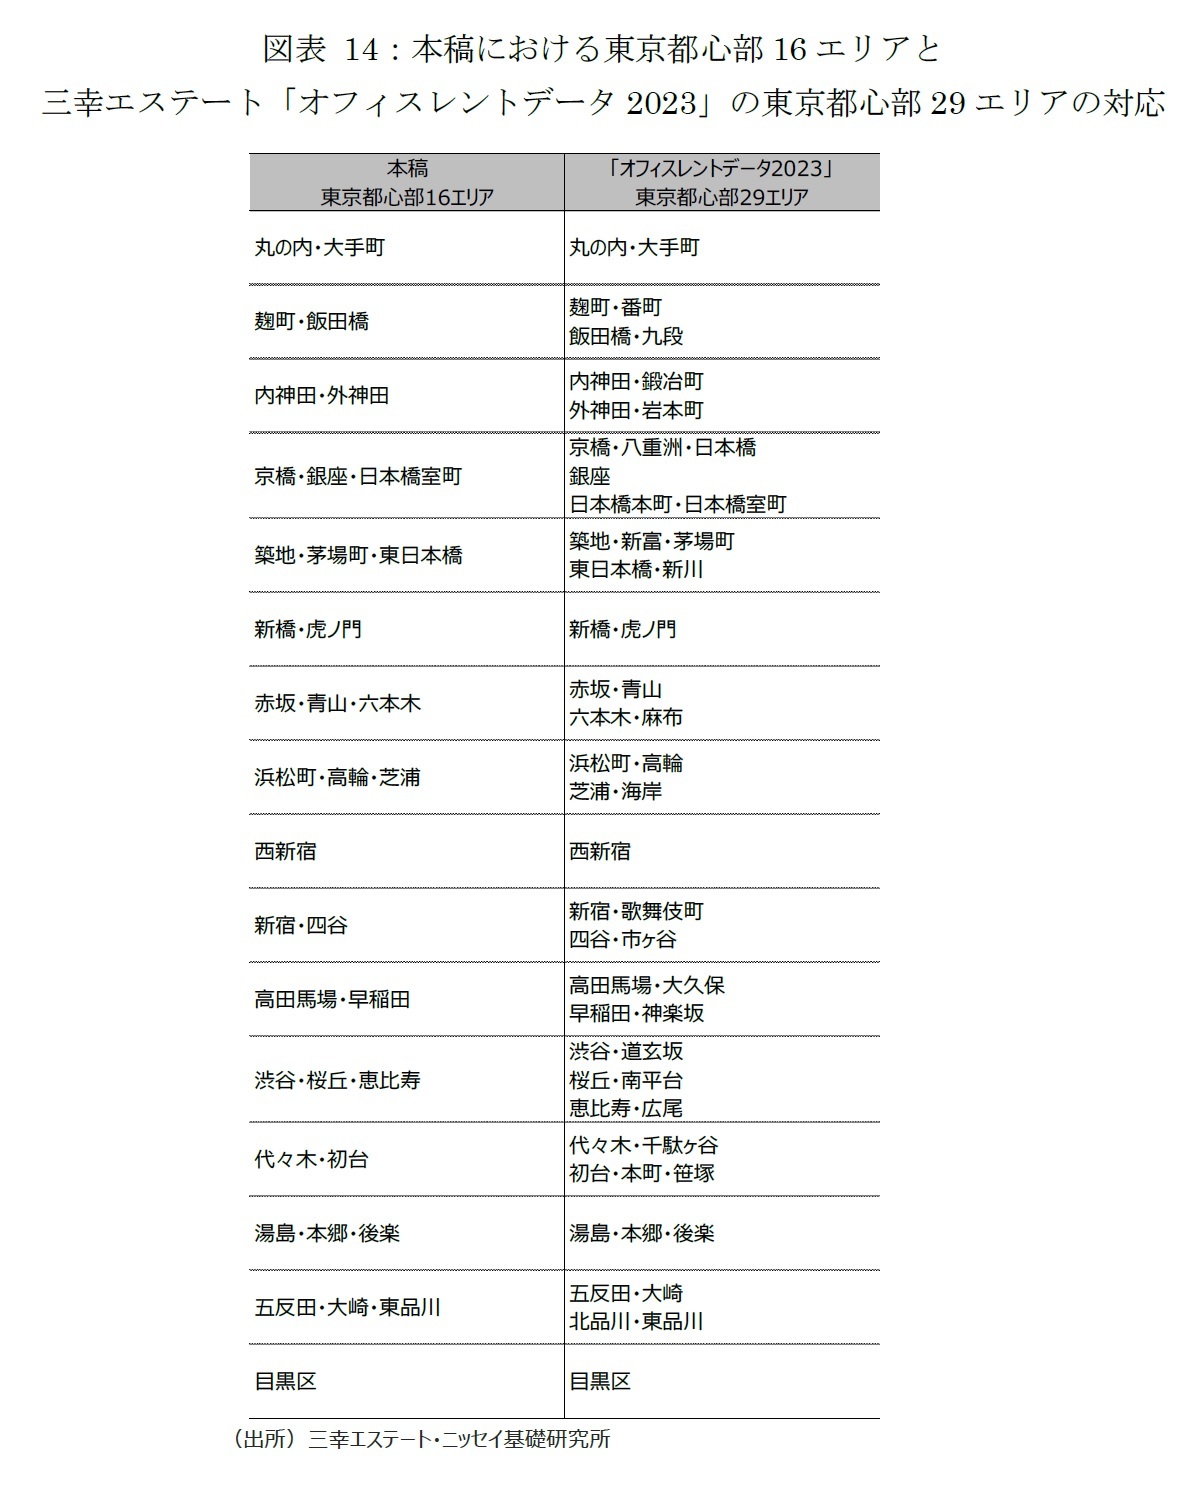 図表 14：本稿における東京都心部16エリアと三幸エステート「オフィスレントデータ2023」の東京都心部29エリアの対応